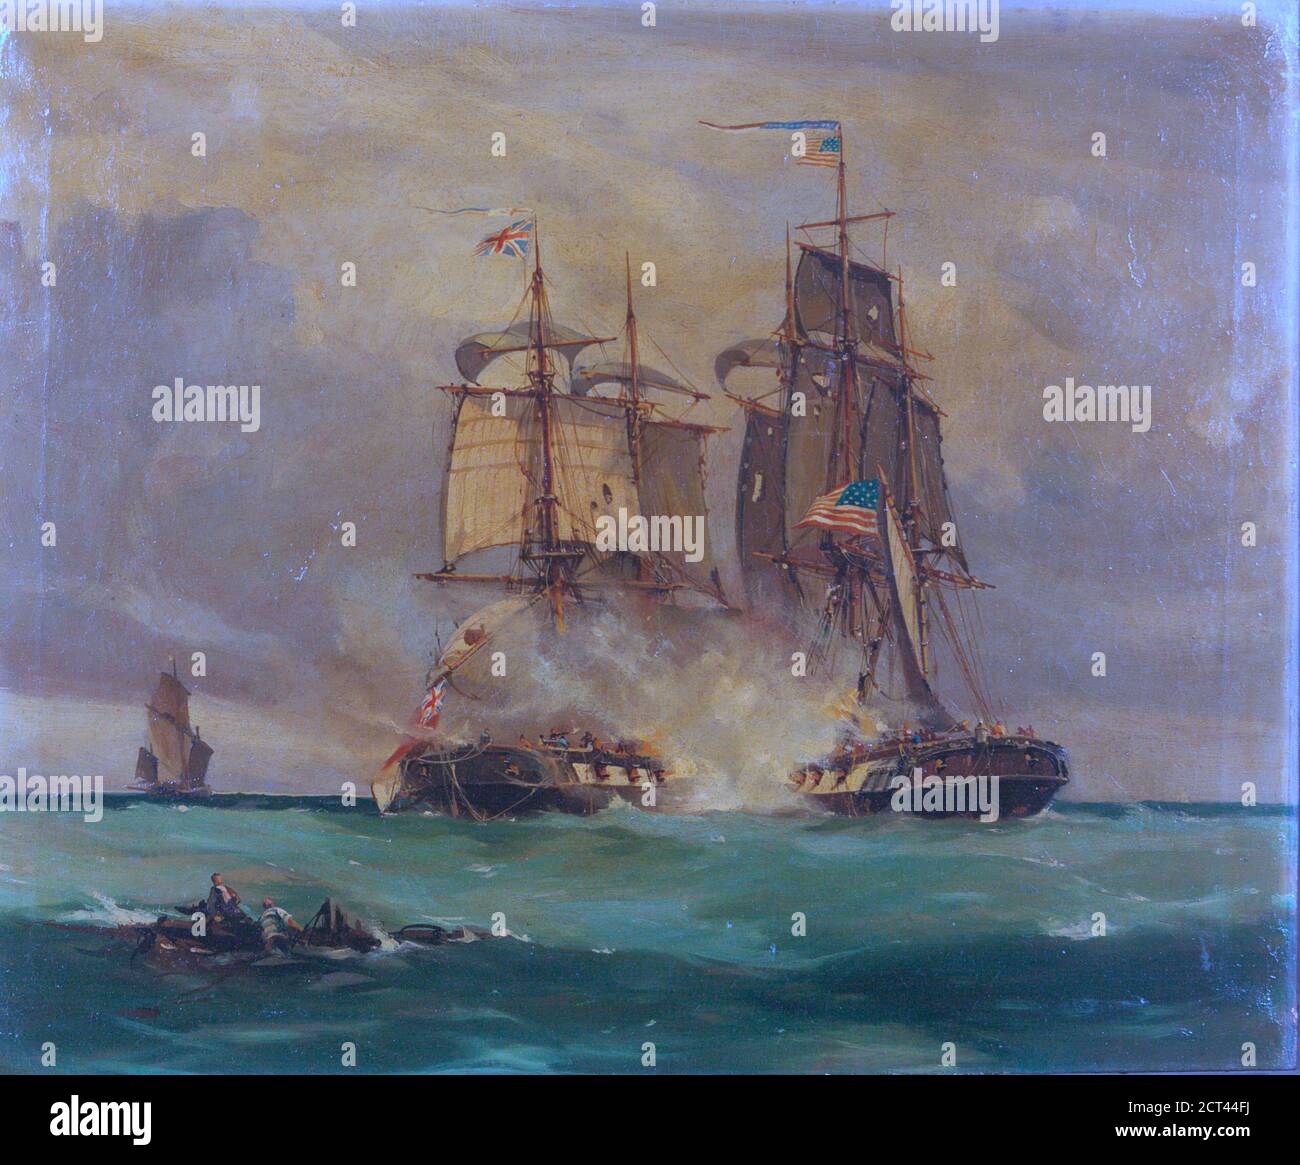 Scène de bataille dans la Manche entre le navire américain 'Wasp' et le brigue anglais 'Reindeer' par Thomas Whitcombe, 1812, huile sur toile, 30 x 20 pouces Banque D'Images